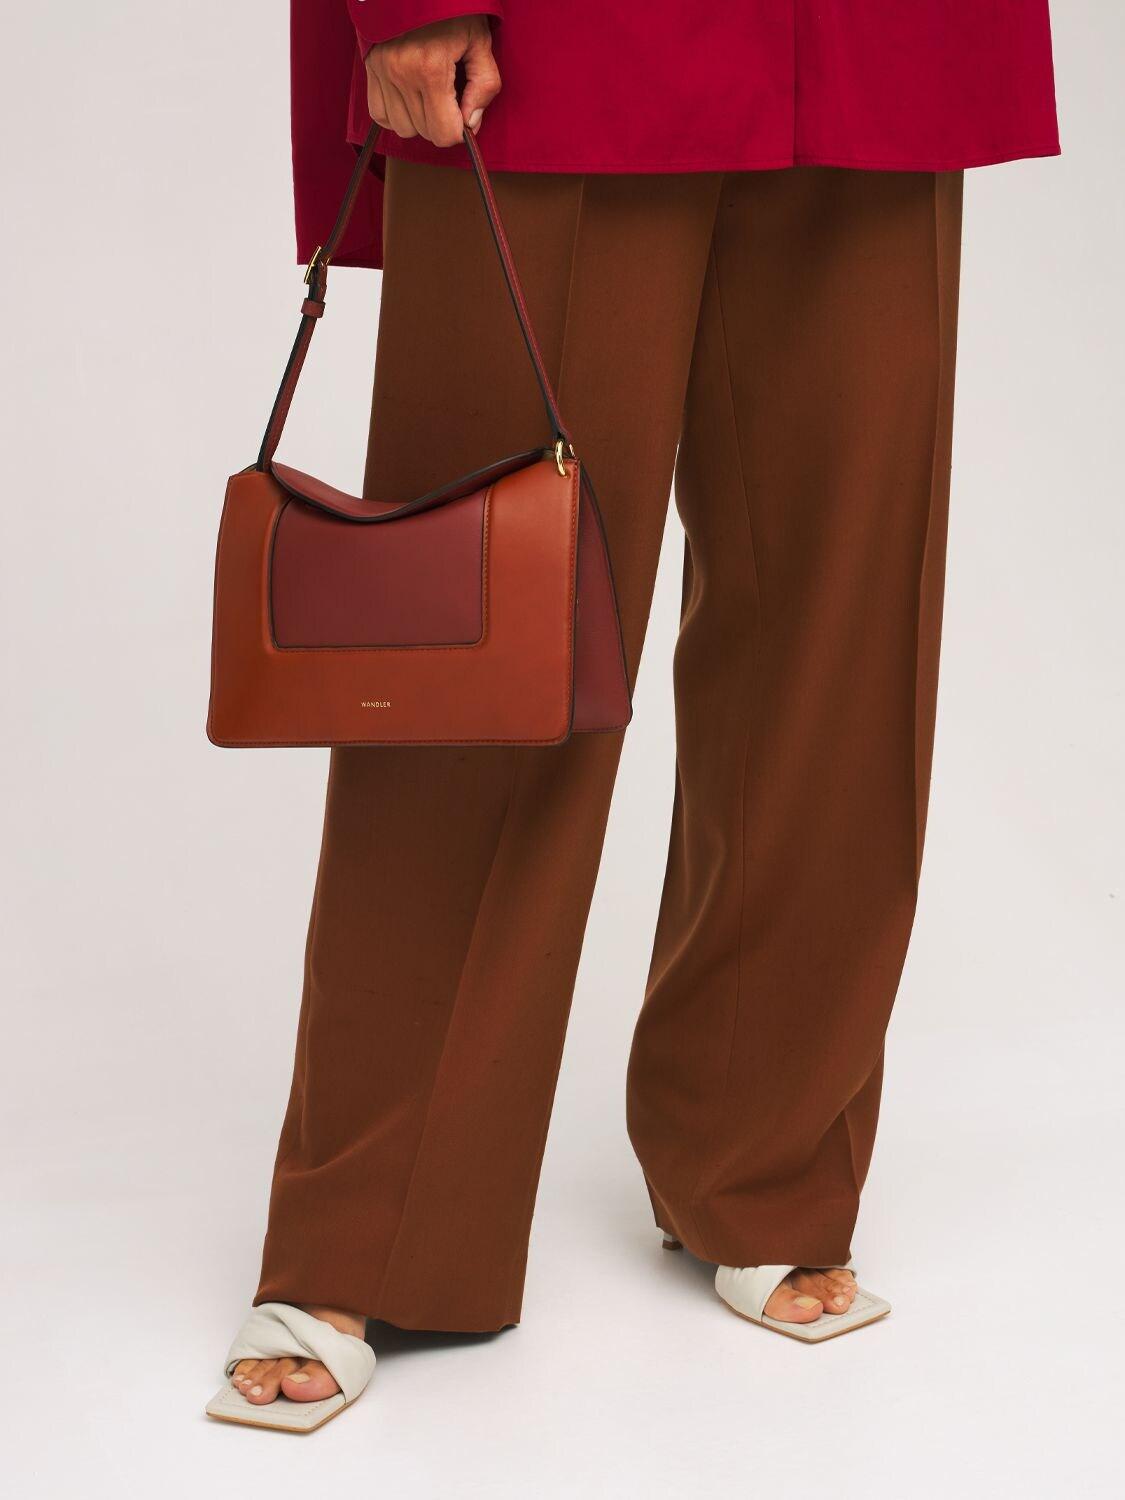 Wandler Penelope Leather Shoulder Bag in Chestnut (Brown) | Lyst 